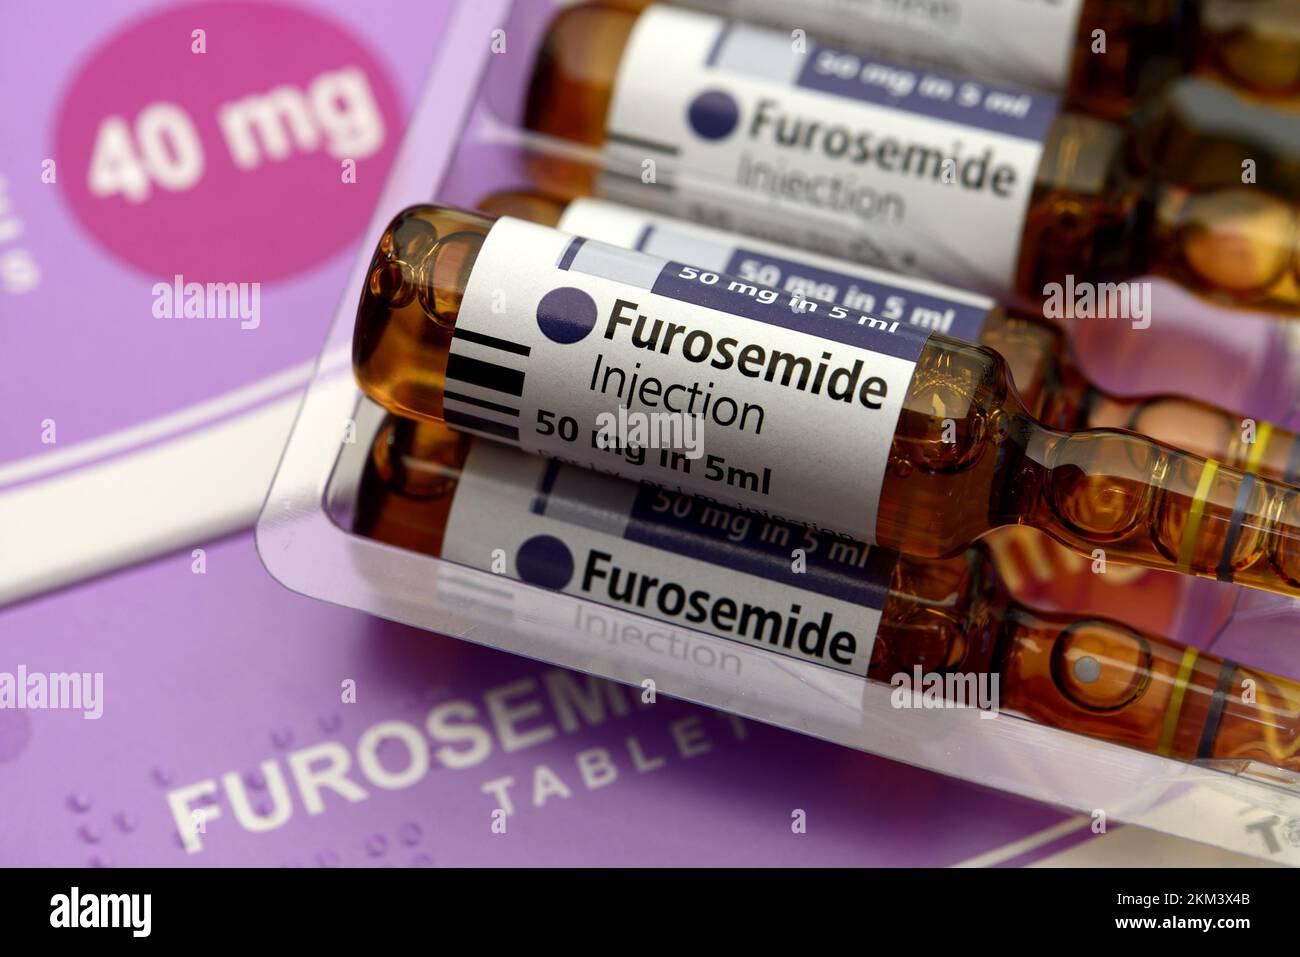 Furosomide - medicinale per il trattamento dell'ipertensione ed edema. 50mg fiale del farmaco liquido per infortunio o somministrazione endovenosa e 40mg compresse Foto Stock